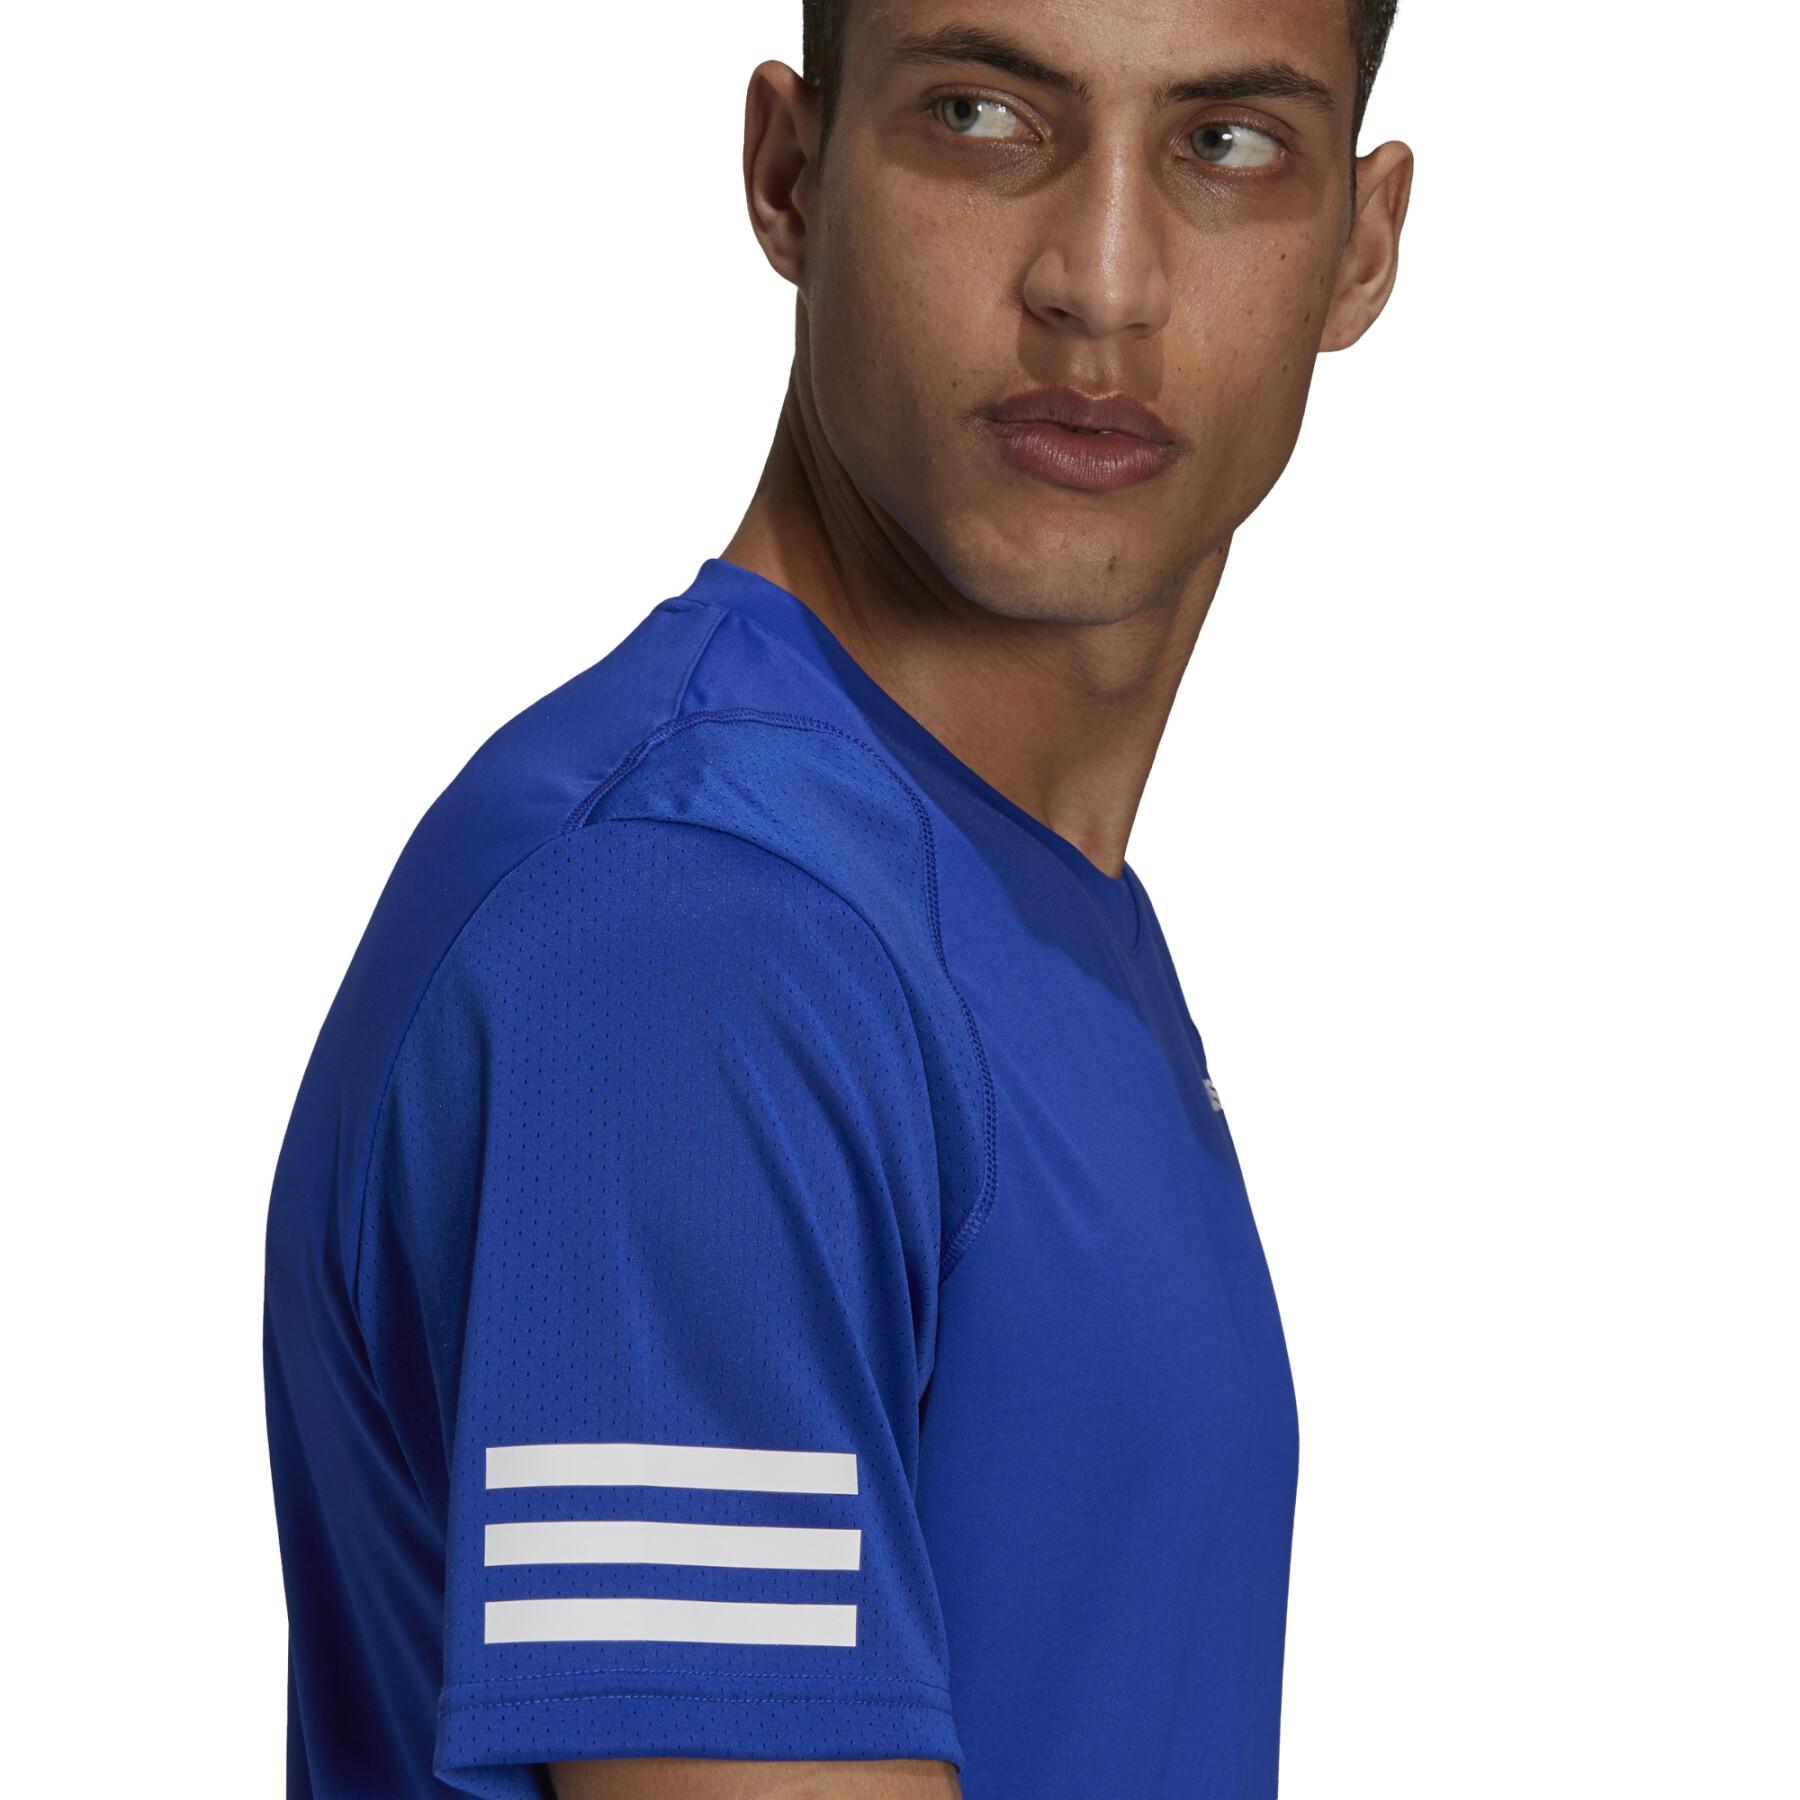 T-shirt adidas Club Tennis 3-Stripes